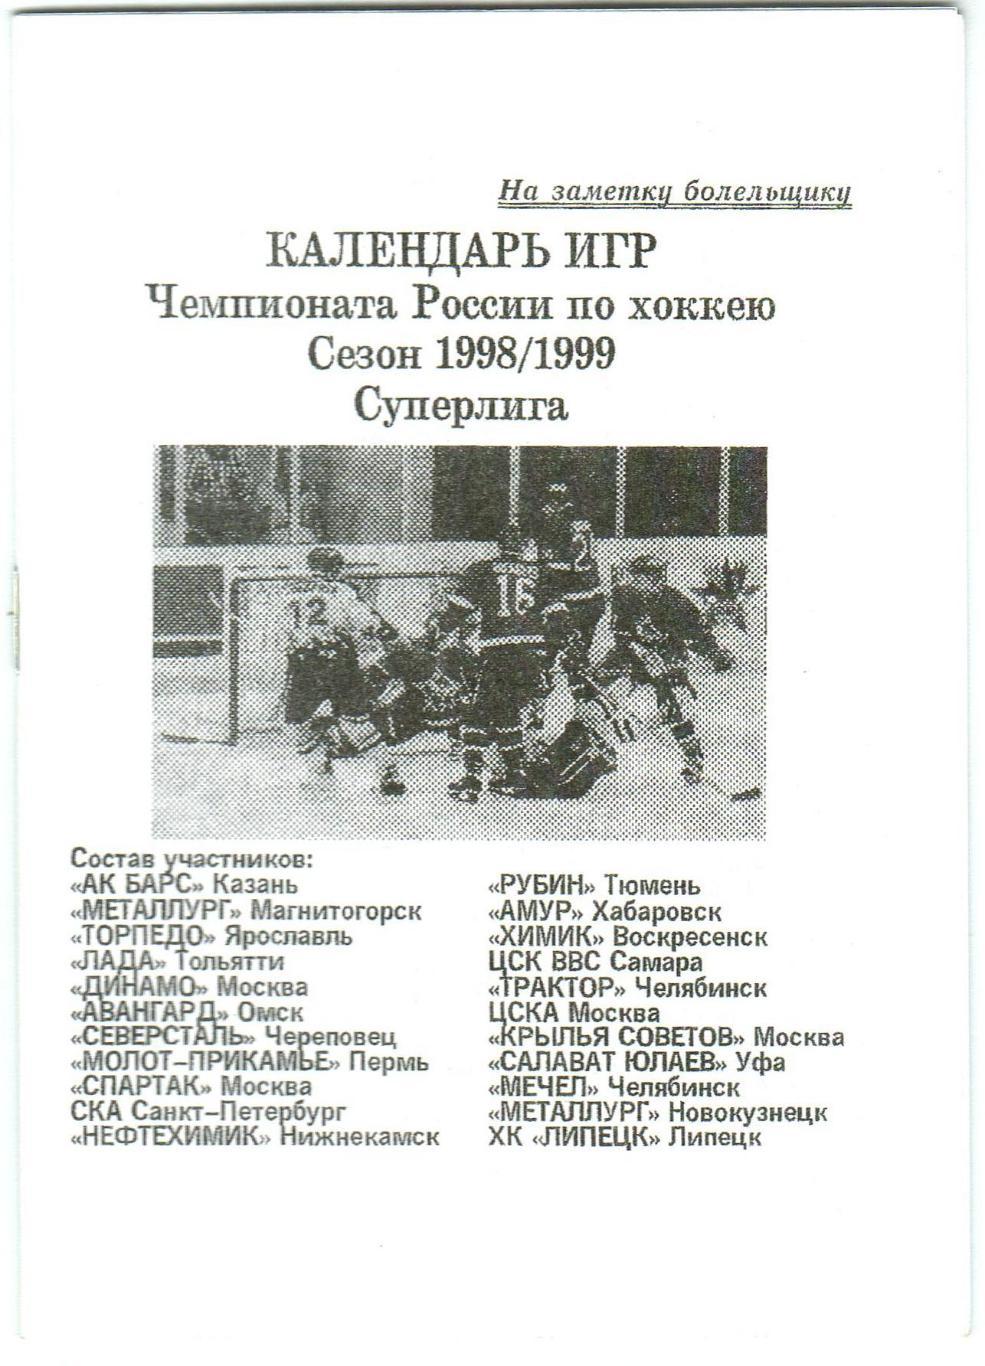 Хоккей-1998/1999 Календарь игр чемпионатаРоссии Суперлига